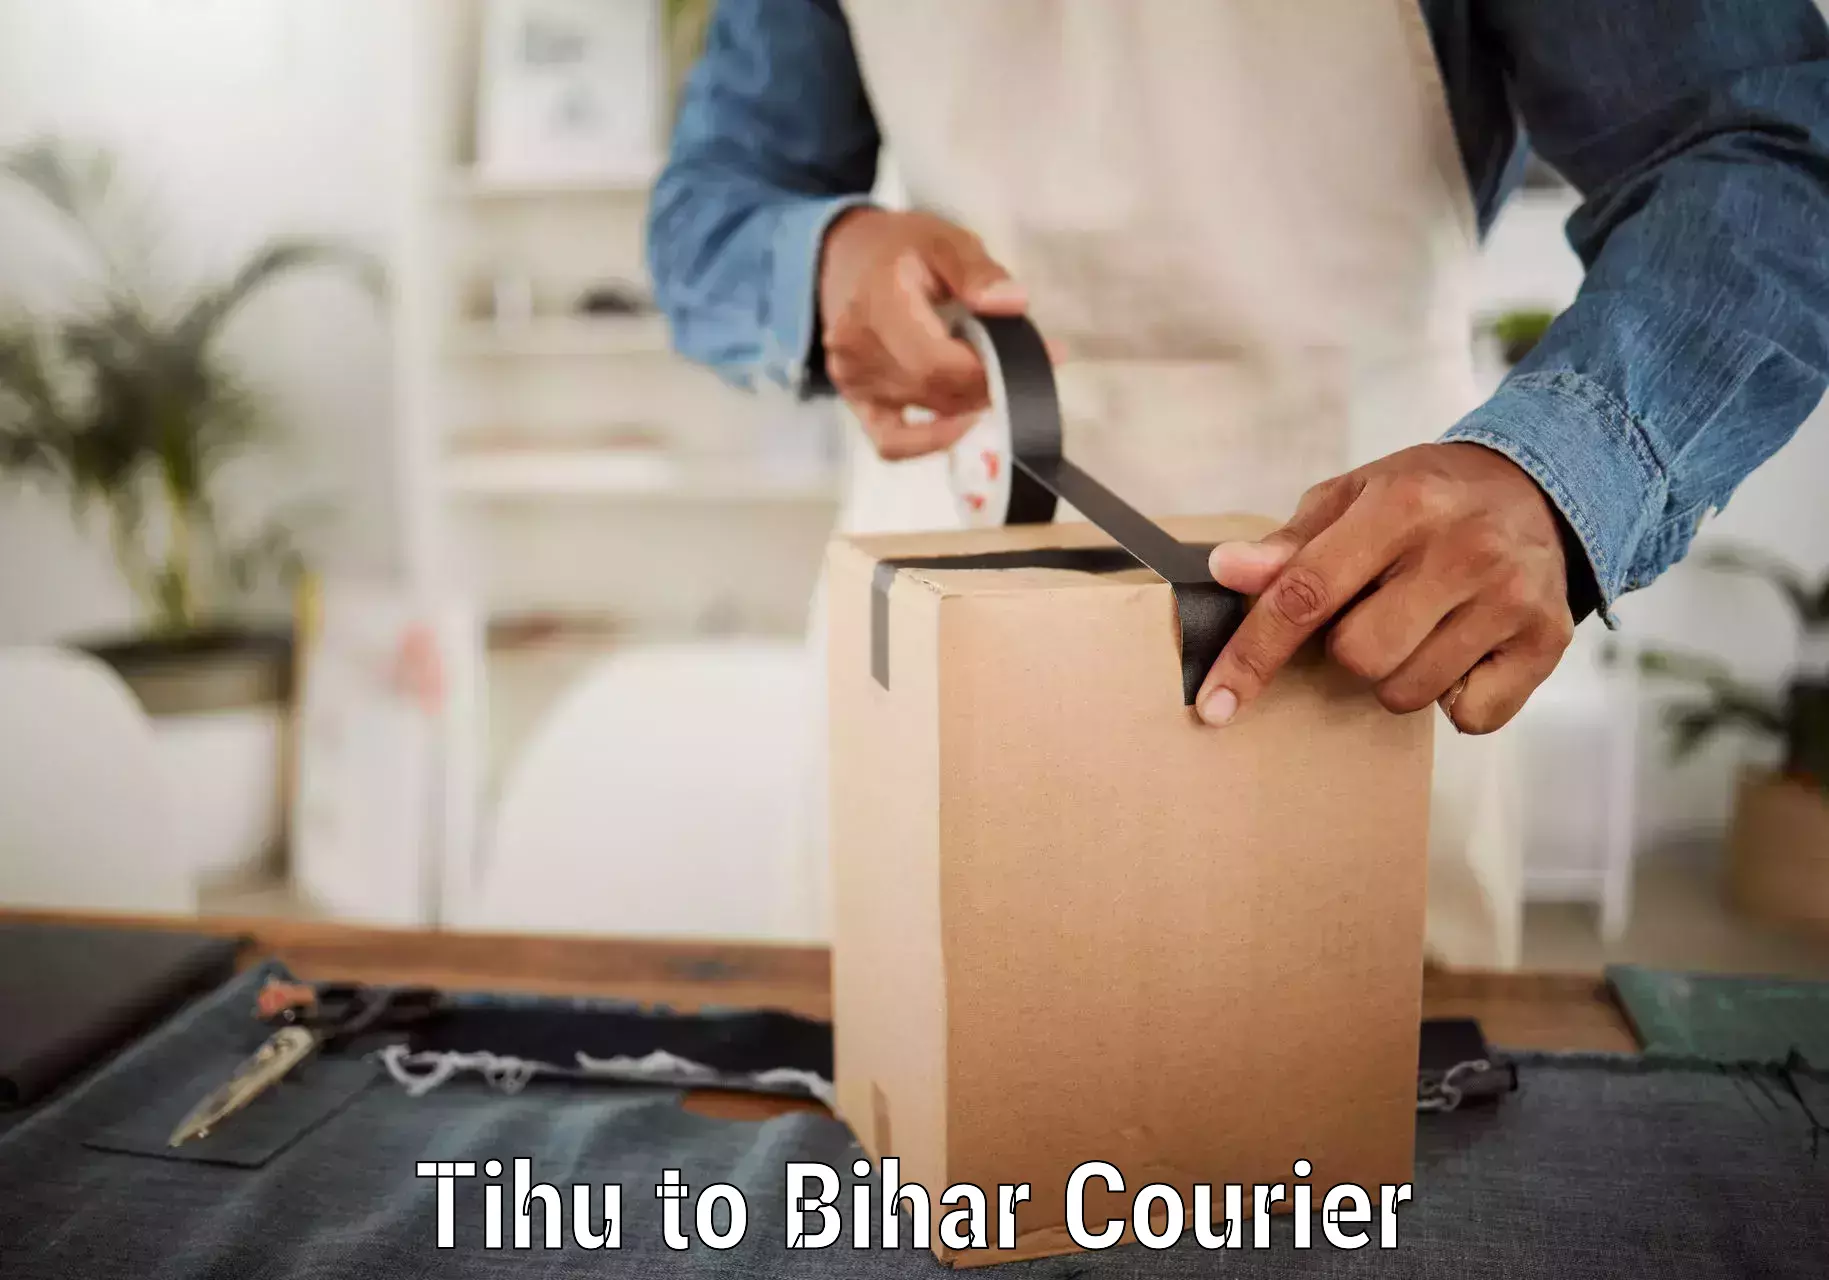 Doorstep delivery service Tihu to Bihar